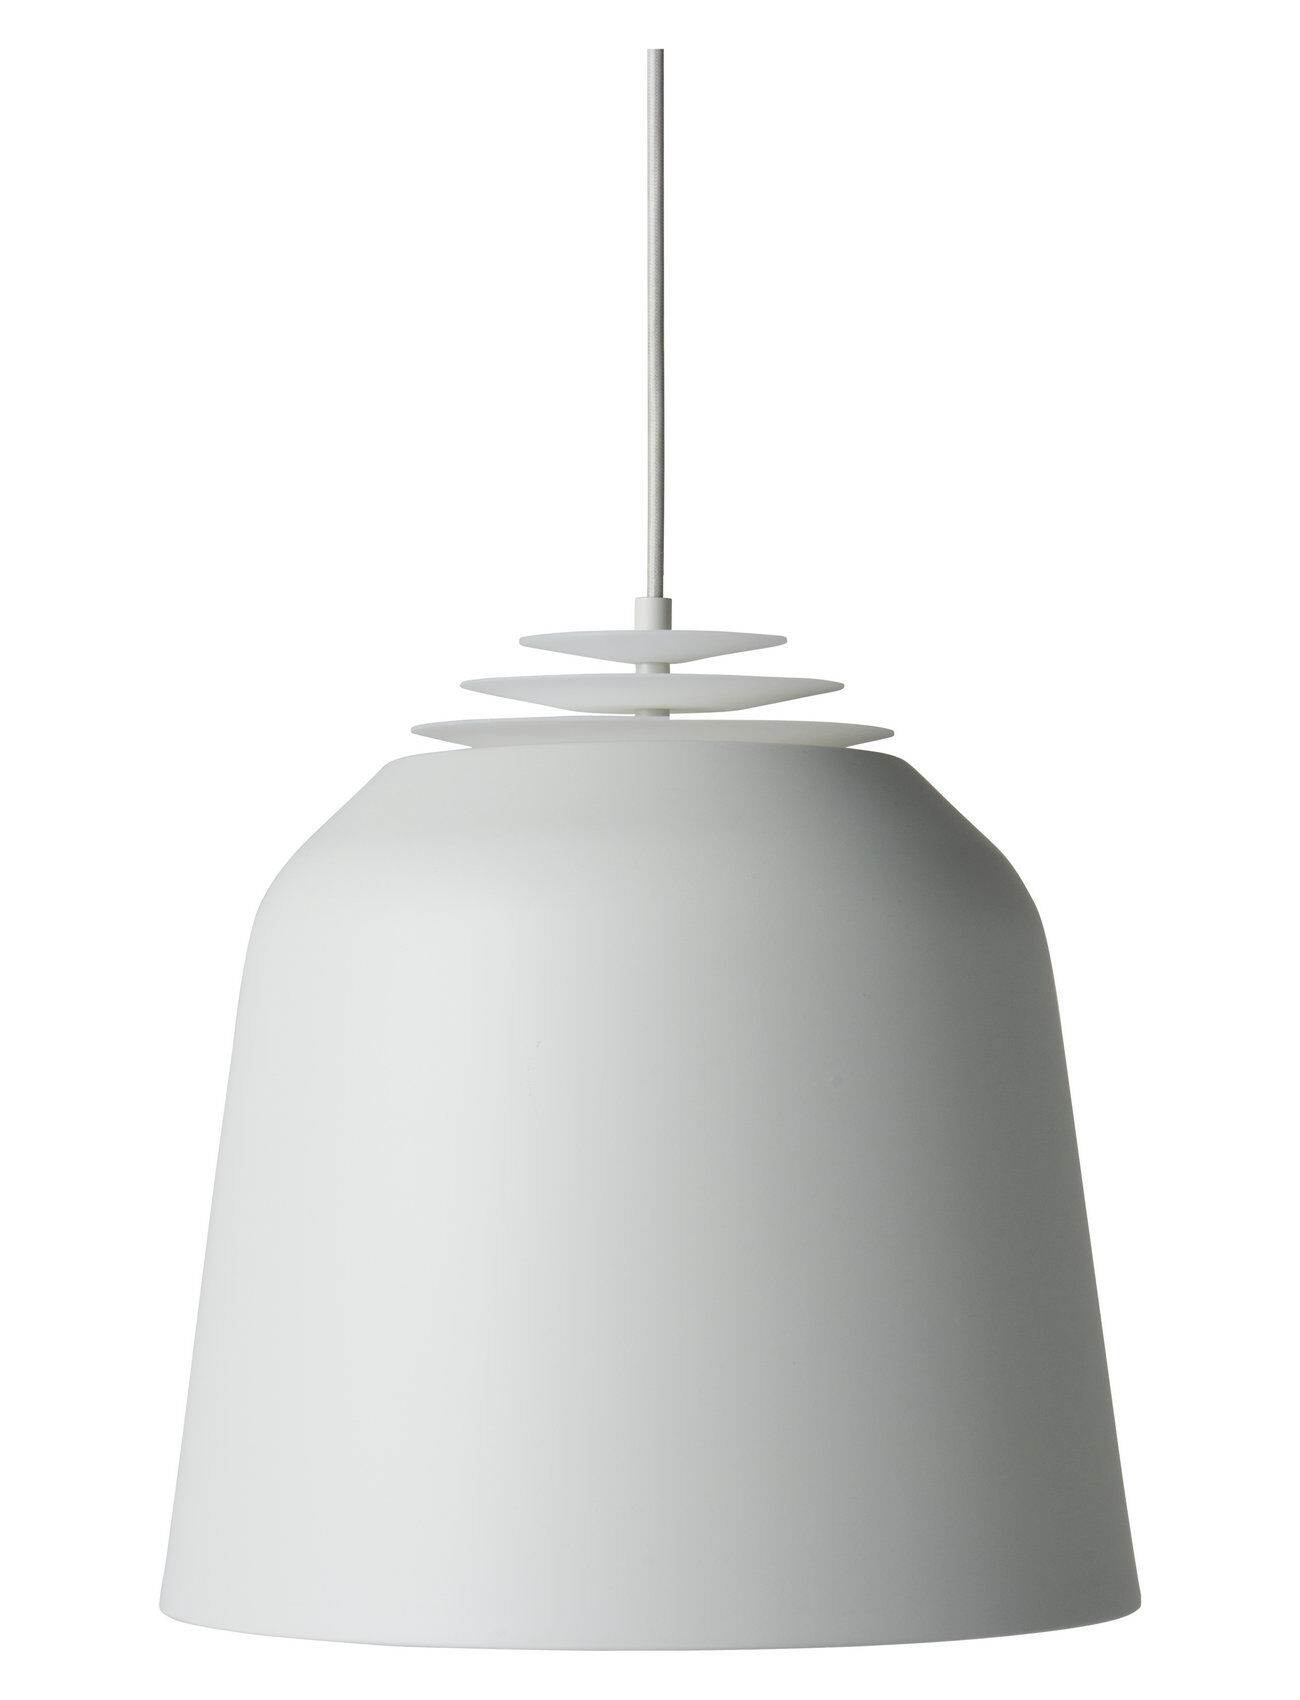 Frandsen Lighting Acorn Large Pendant Home Lighting Lamps Ceiling Lamps Pendant Lamps Grå Frandsen Lighting